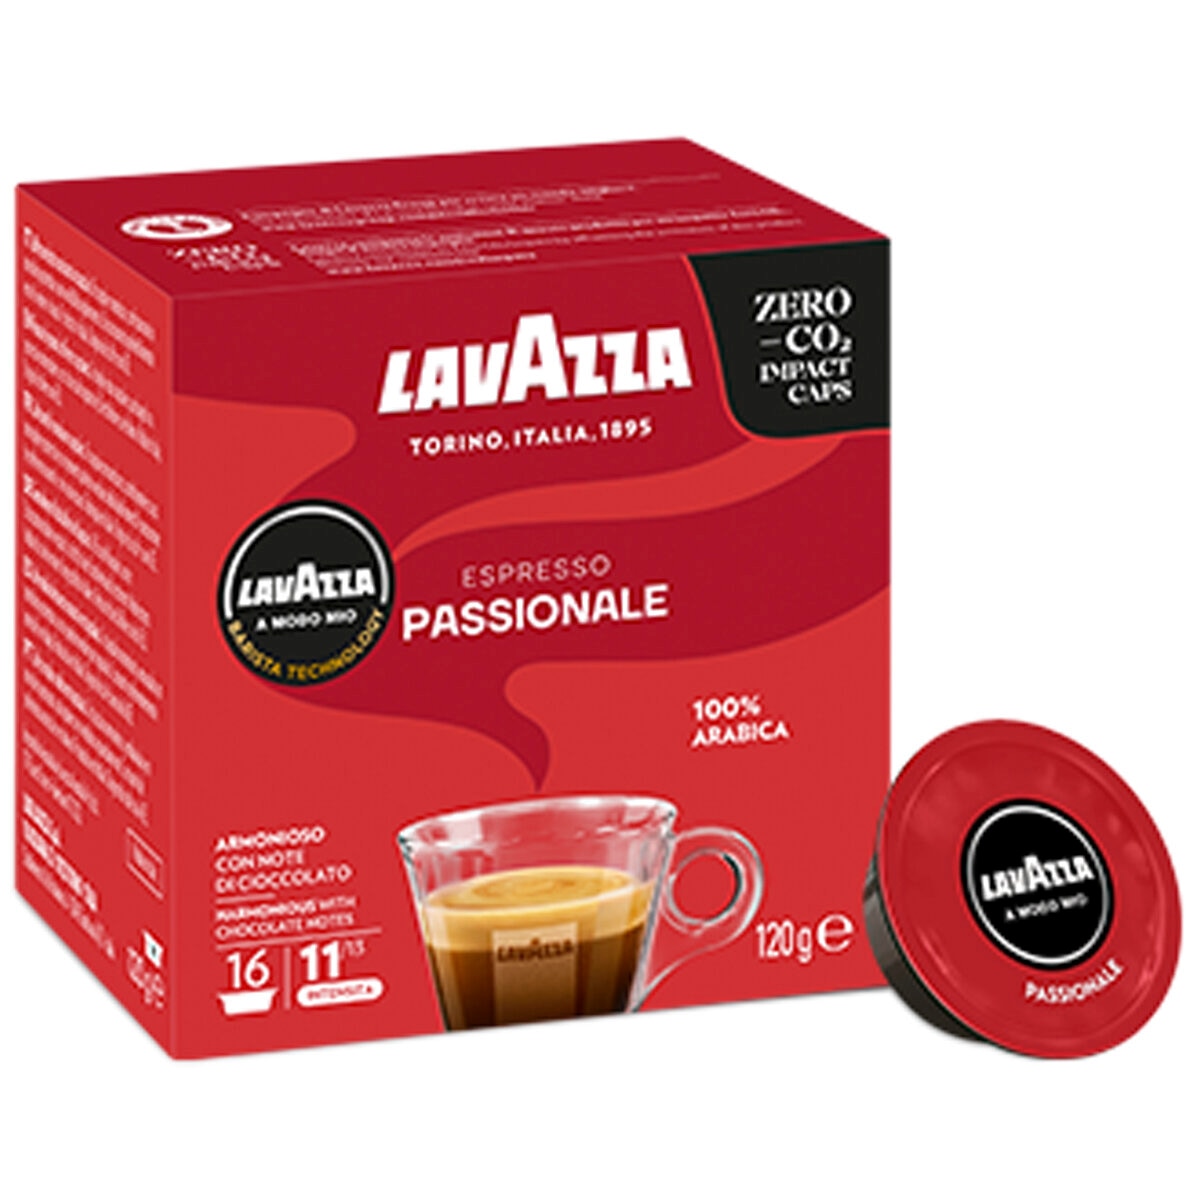 Lavazza A Modo Mio Store – capsule coffee machines and coffee capsules